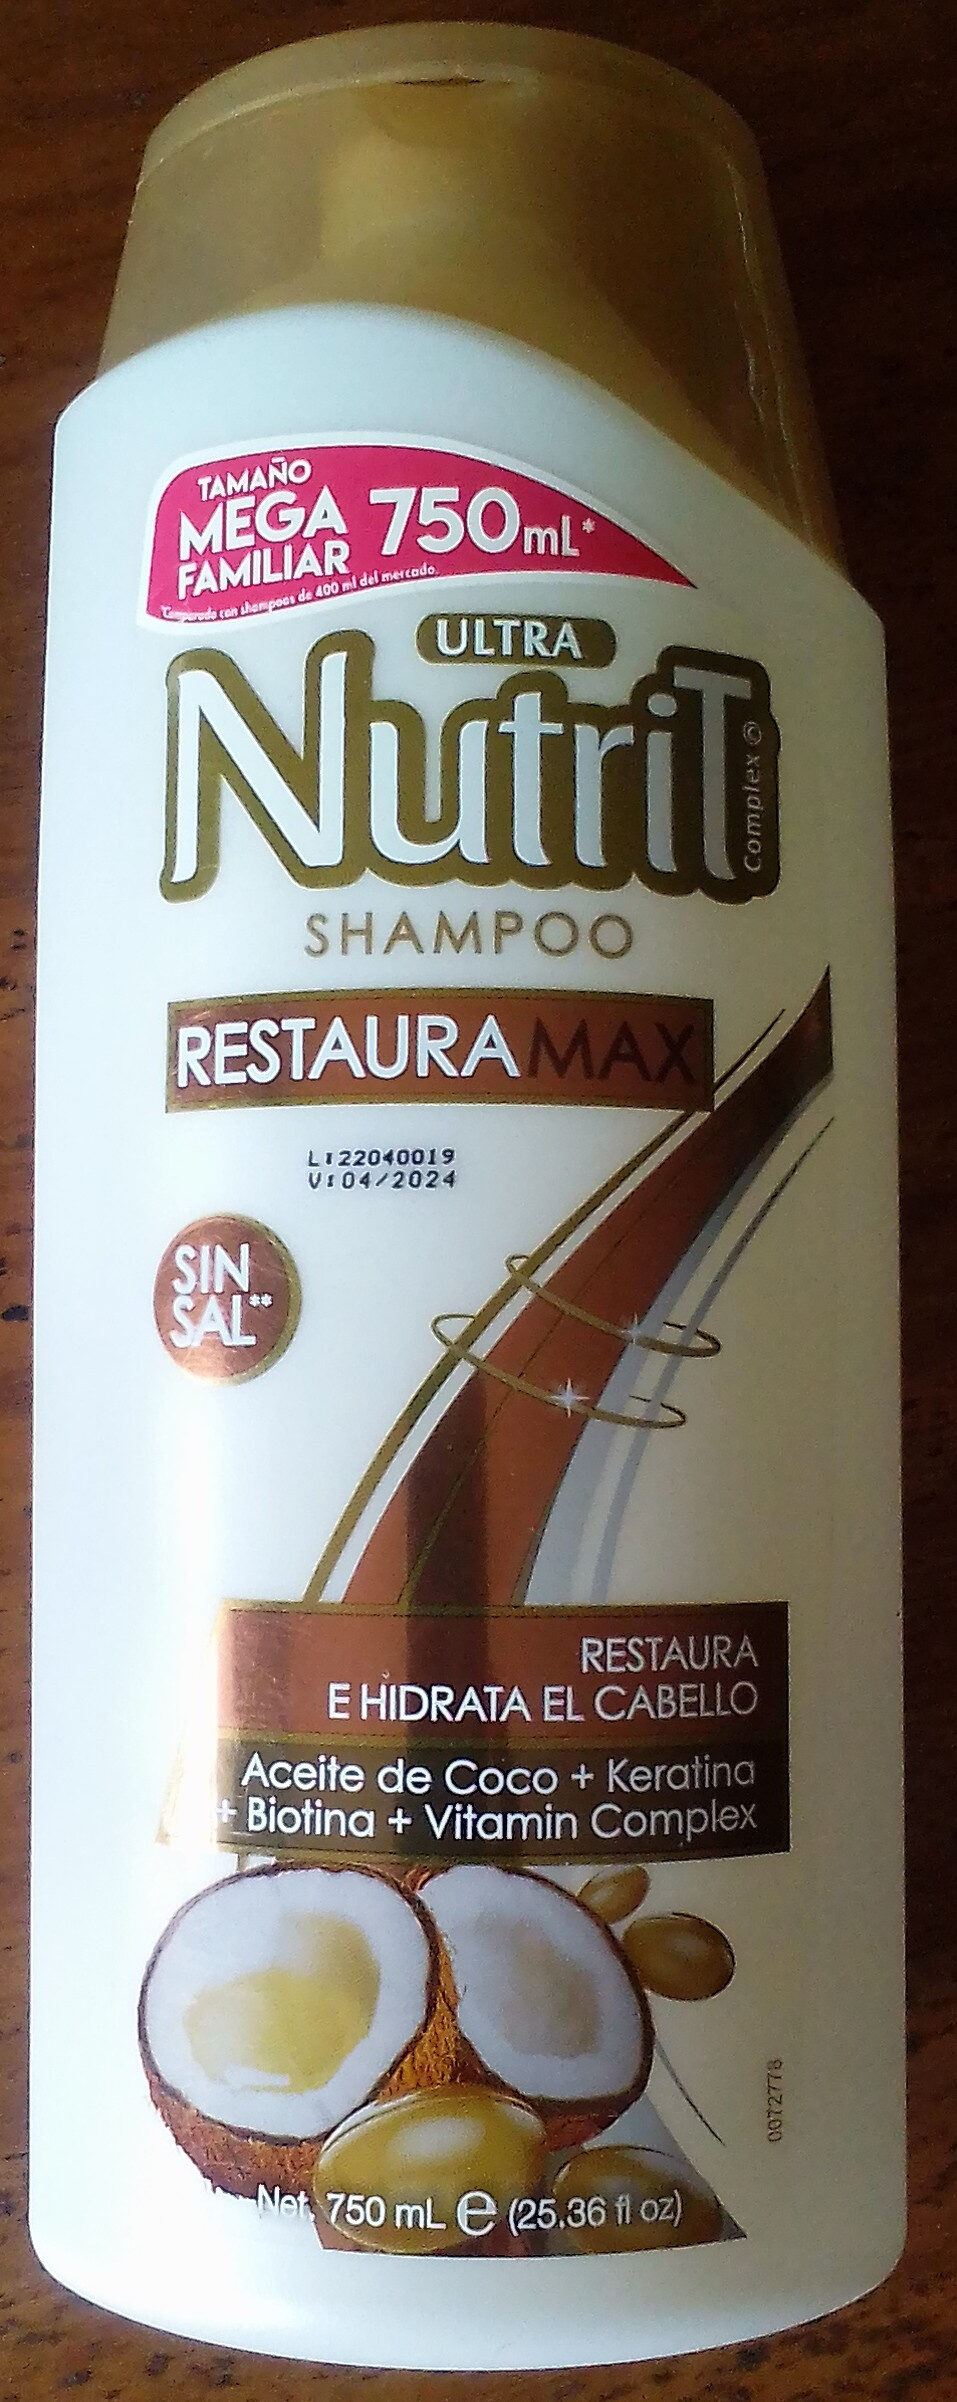 Ultra Nutrit Shampoo Restaura Max - Produit - en